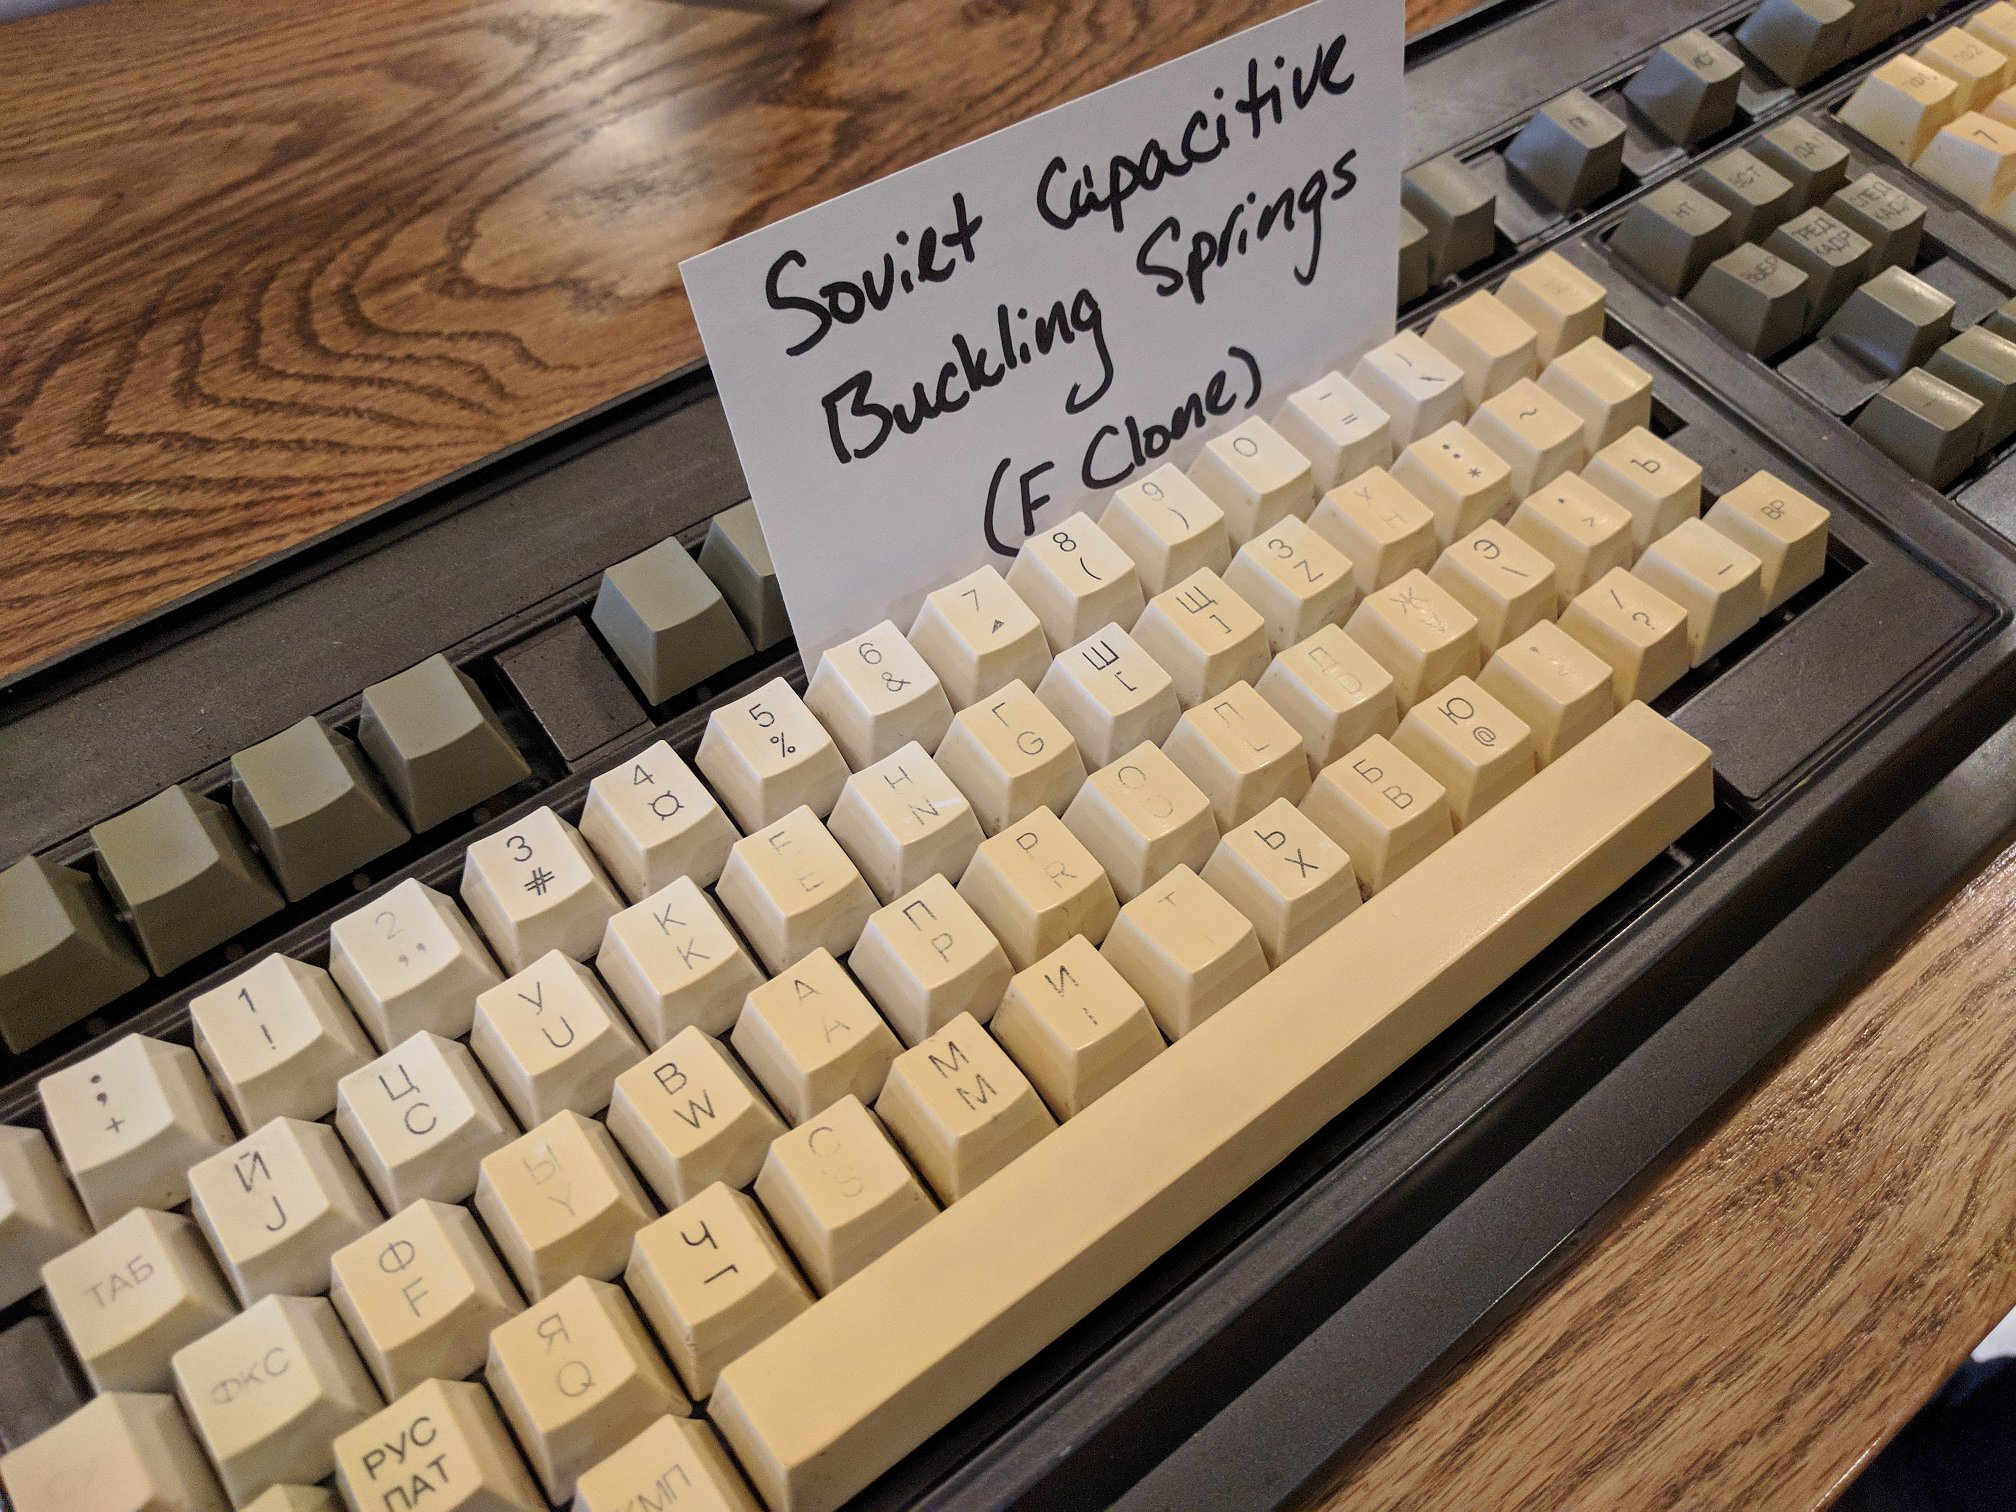 soviet capacitive buckling spring keyboard 20171111 19977 s